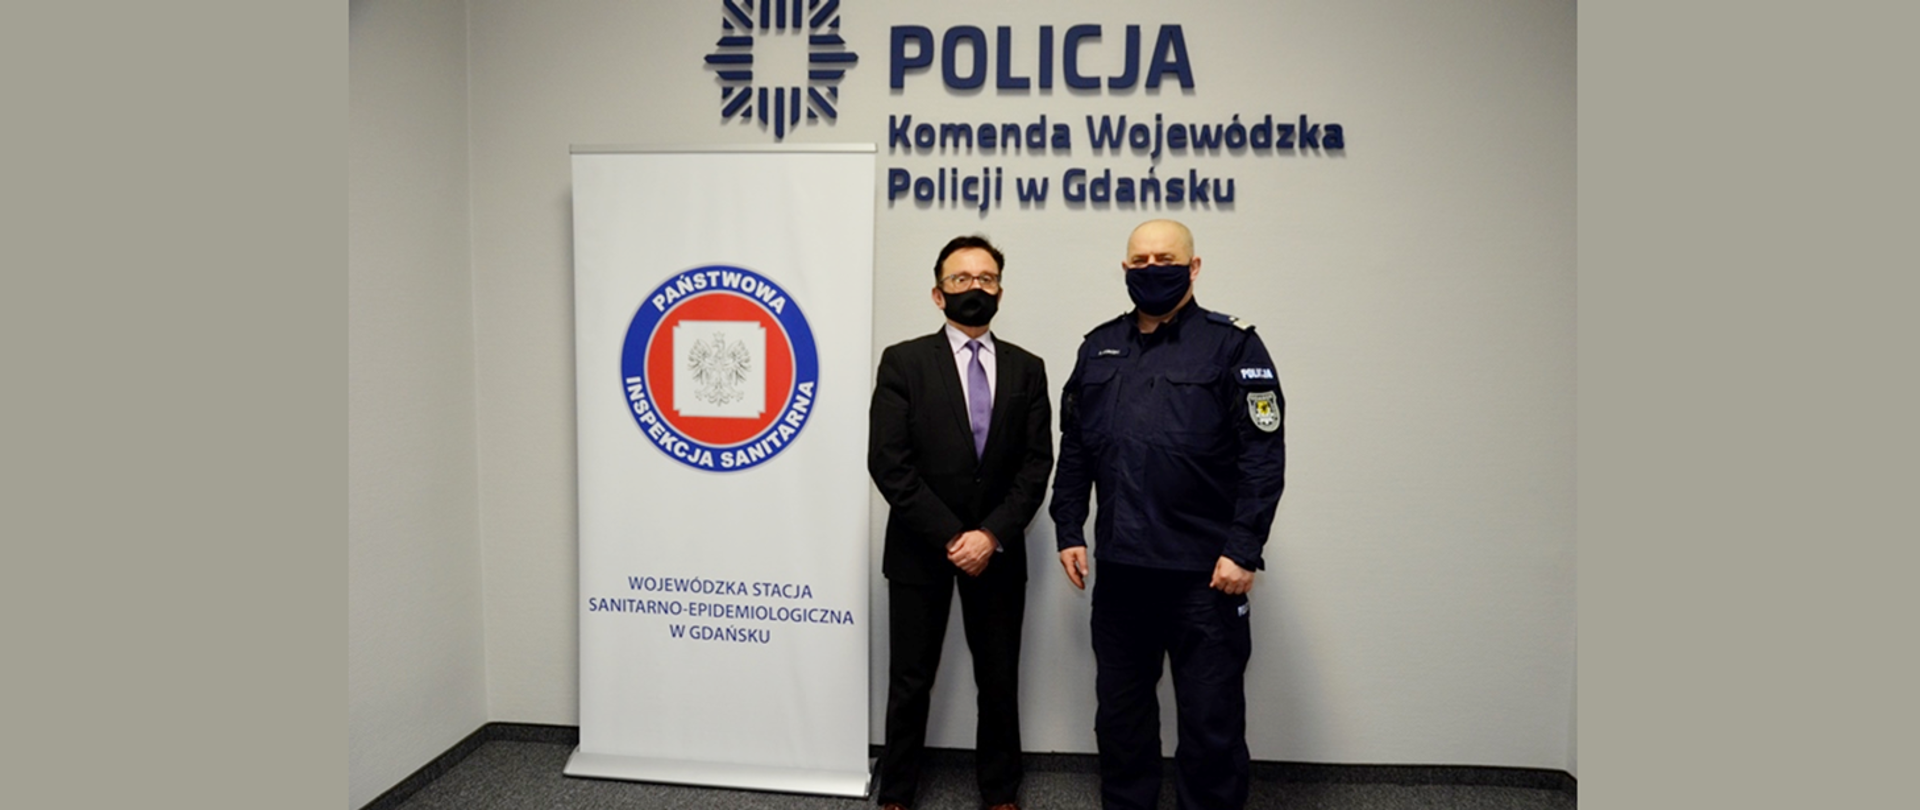 Zdjęcie przedstawia spotkanie Pomorskiego Państwowego Wojewódzkiego Inspektora Sanitarnego z Wojewódzkim Komendantem Policji w Gdańsku